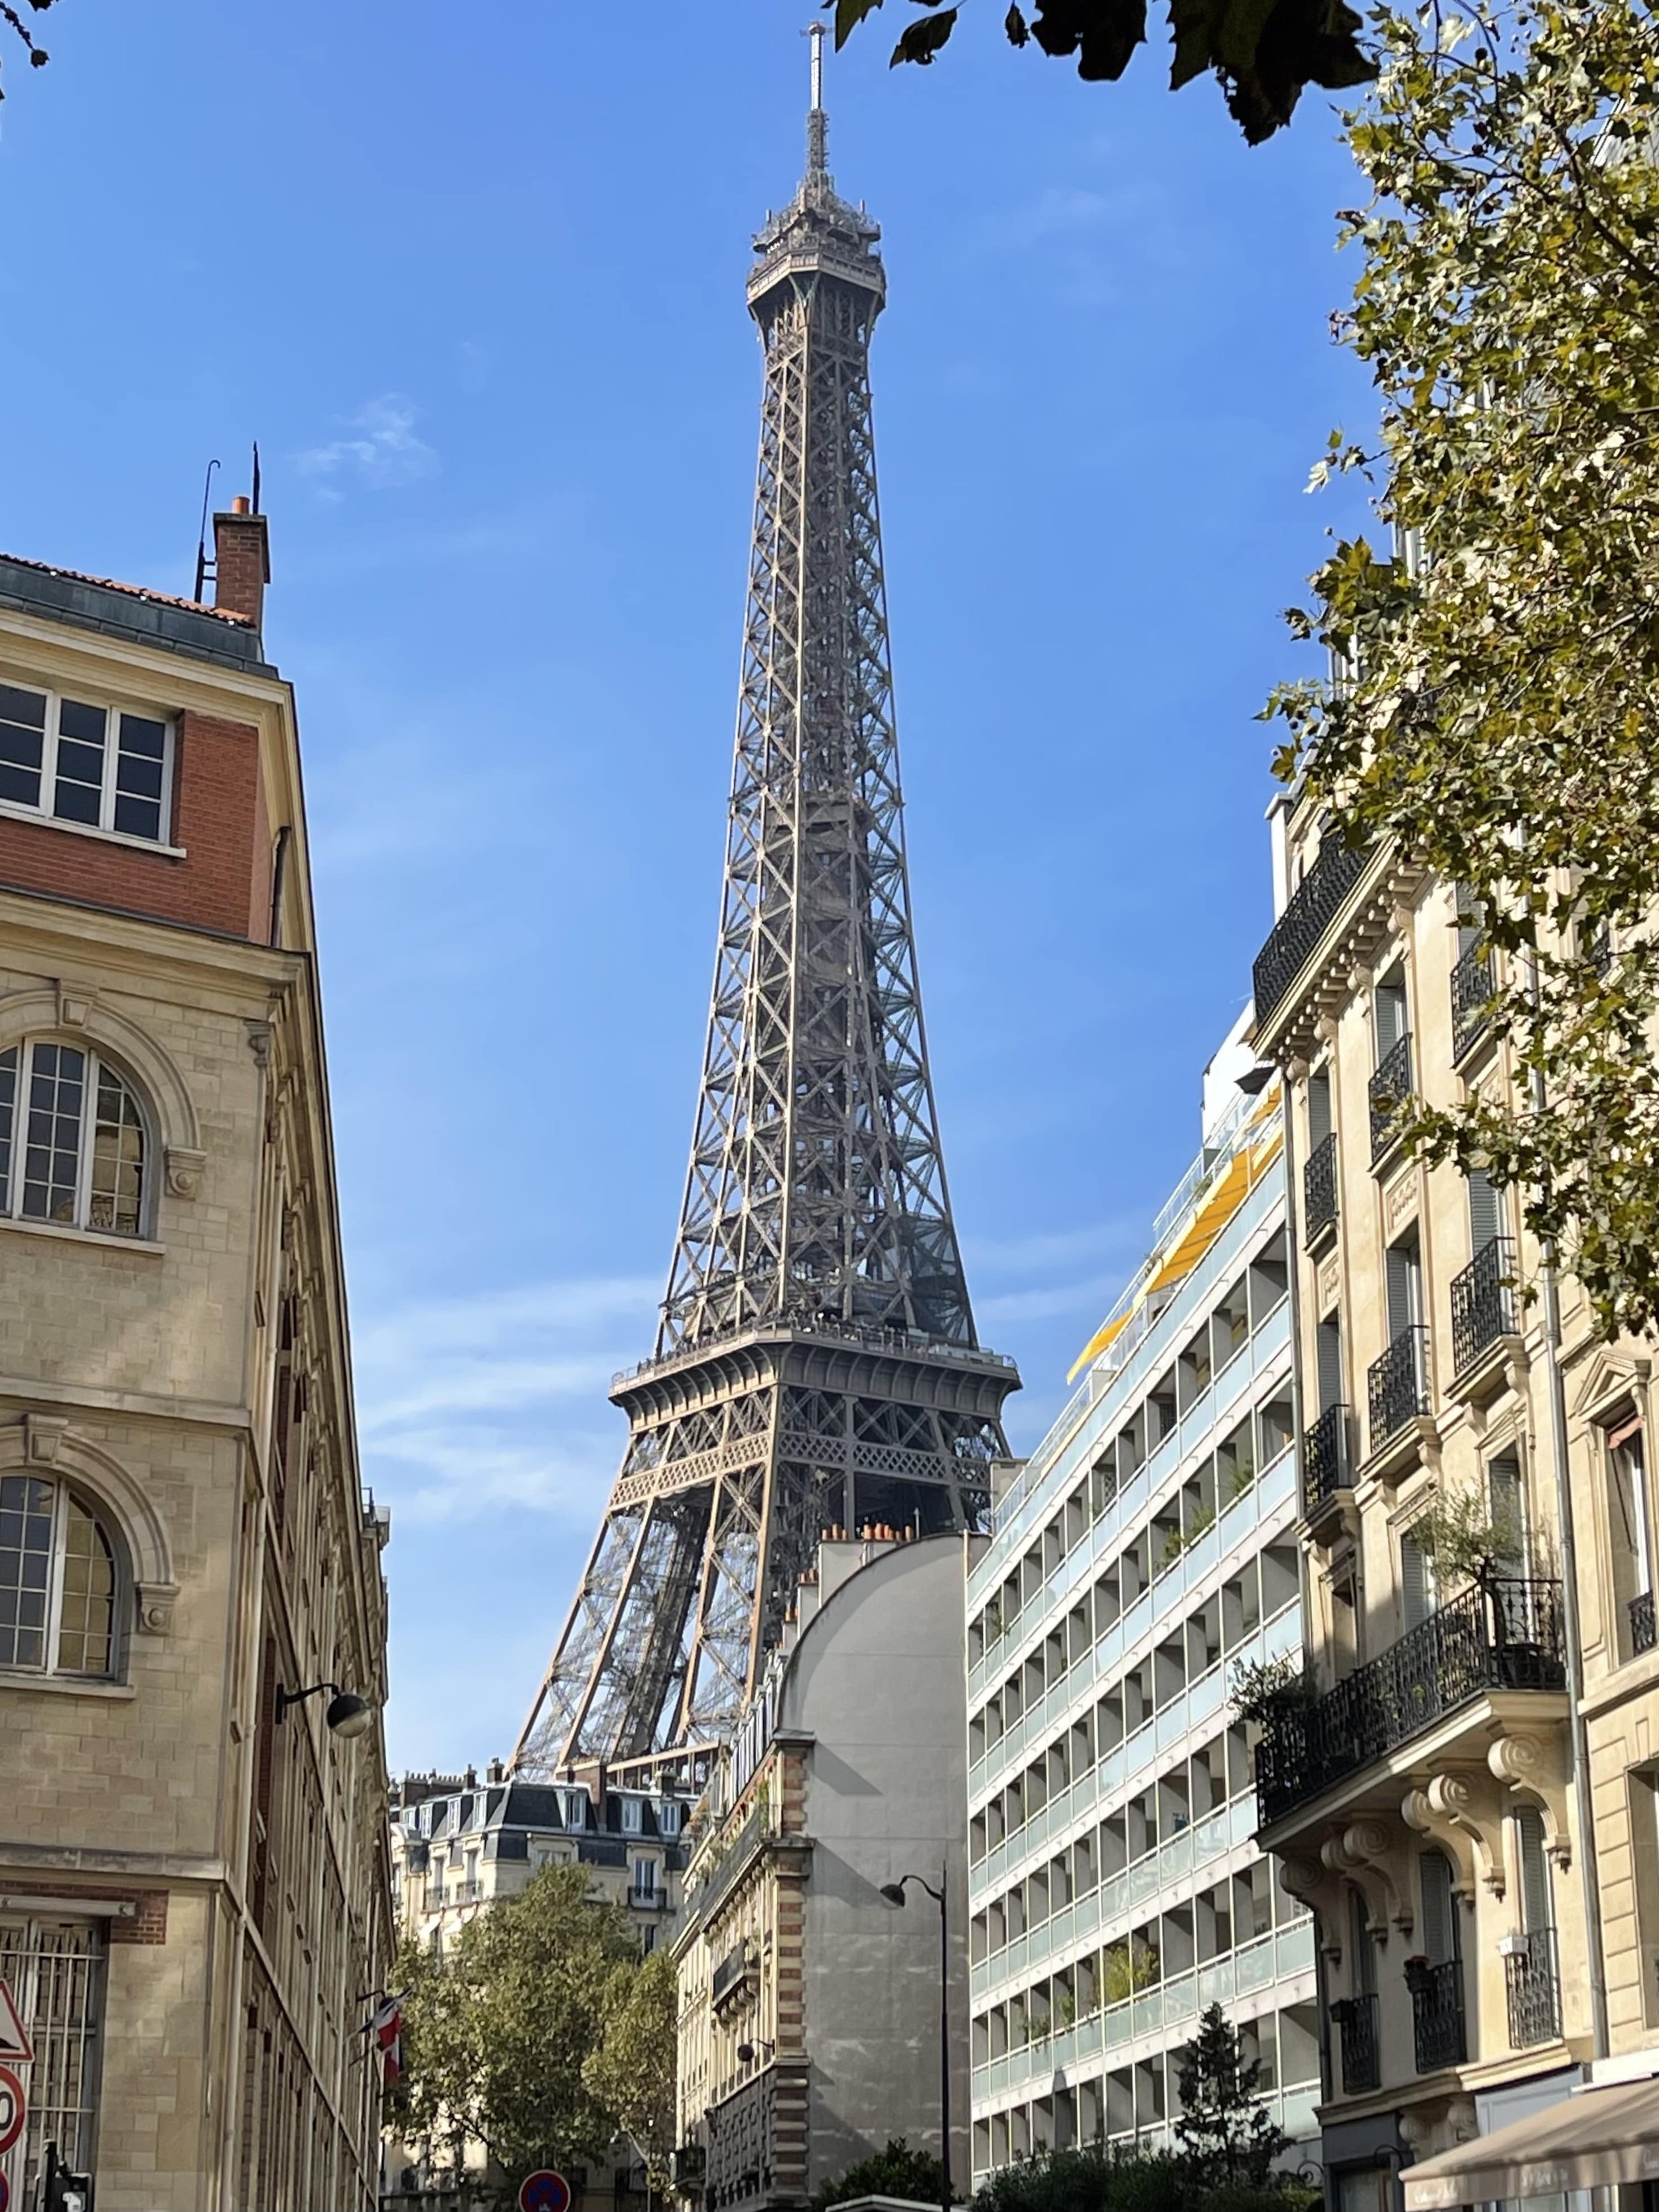 Eiffel Tower from Avenue Rapp near Rue Cler